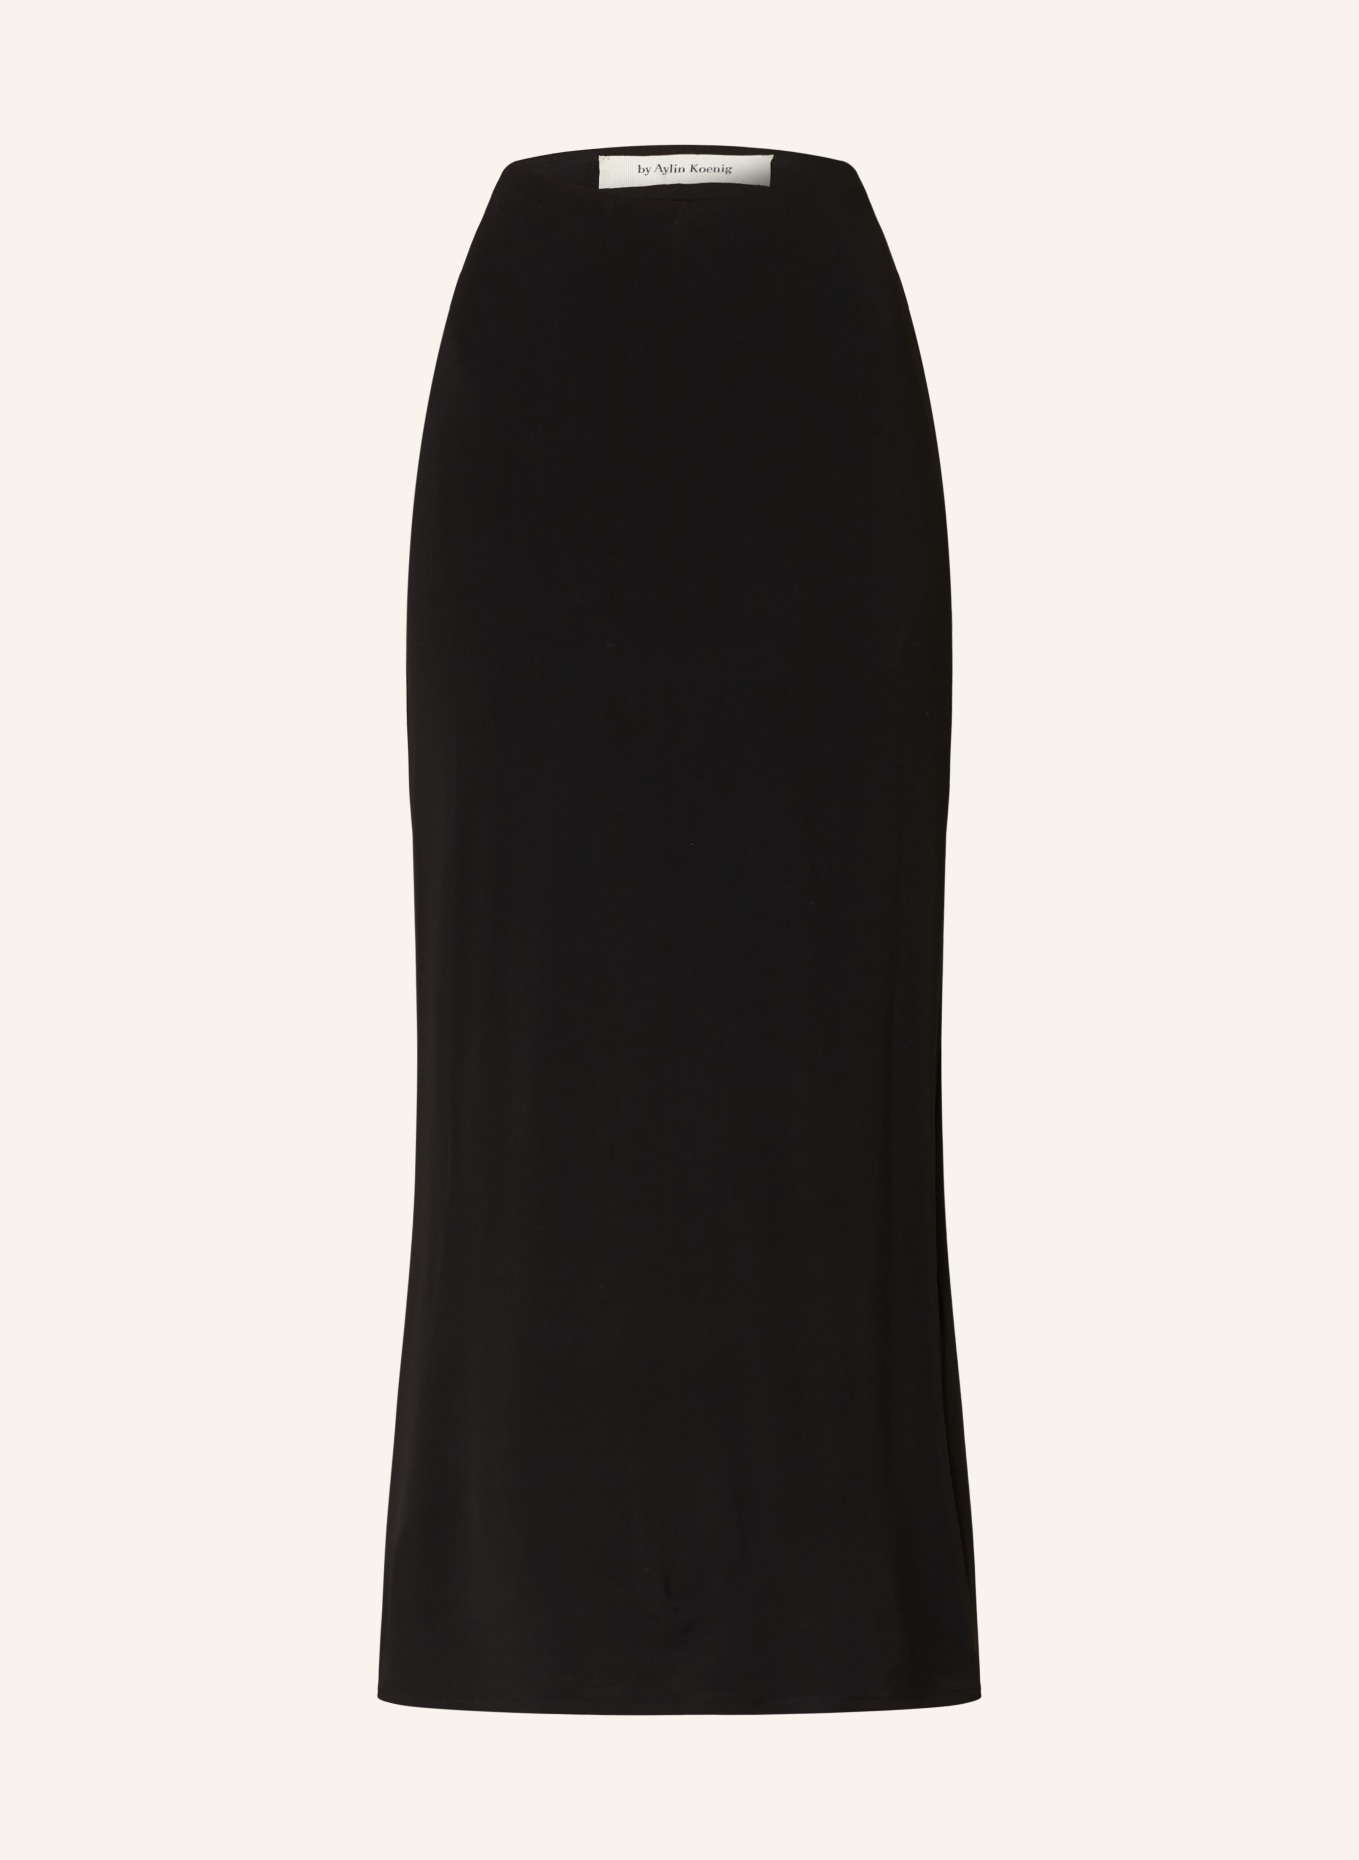 by Aylin Koenig Skirt, Color: BLACK (Image 1)